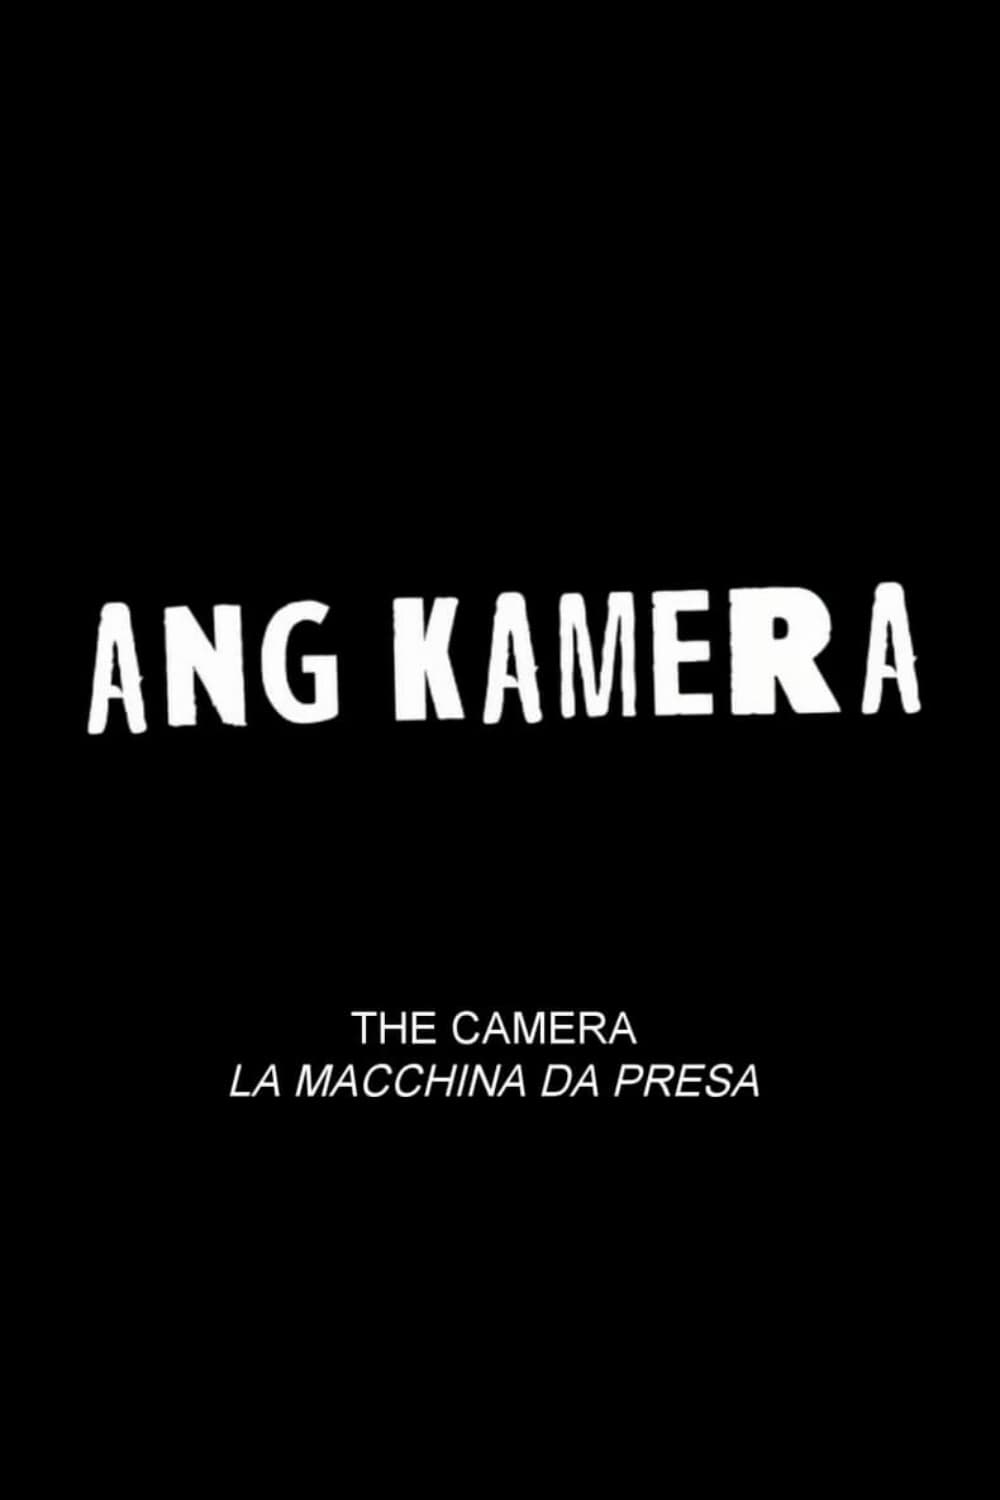 Ang Kamera film